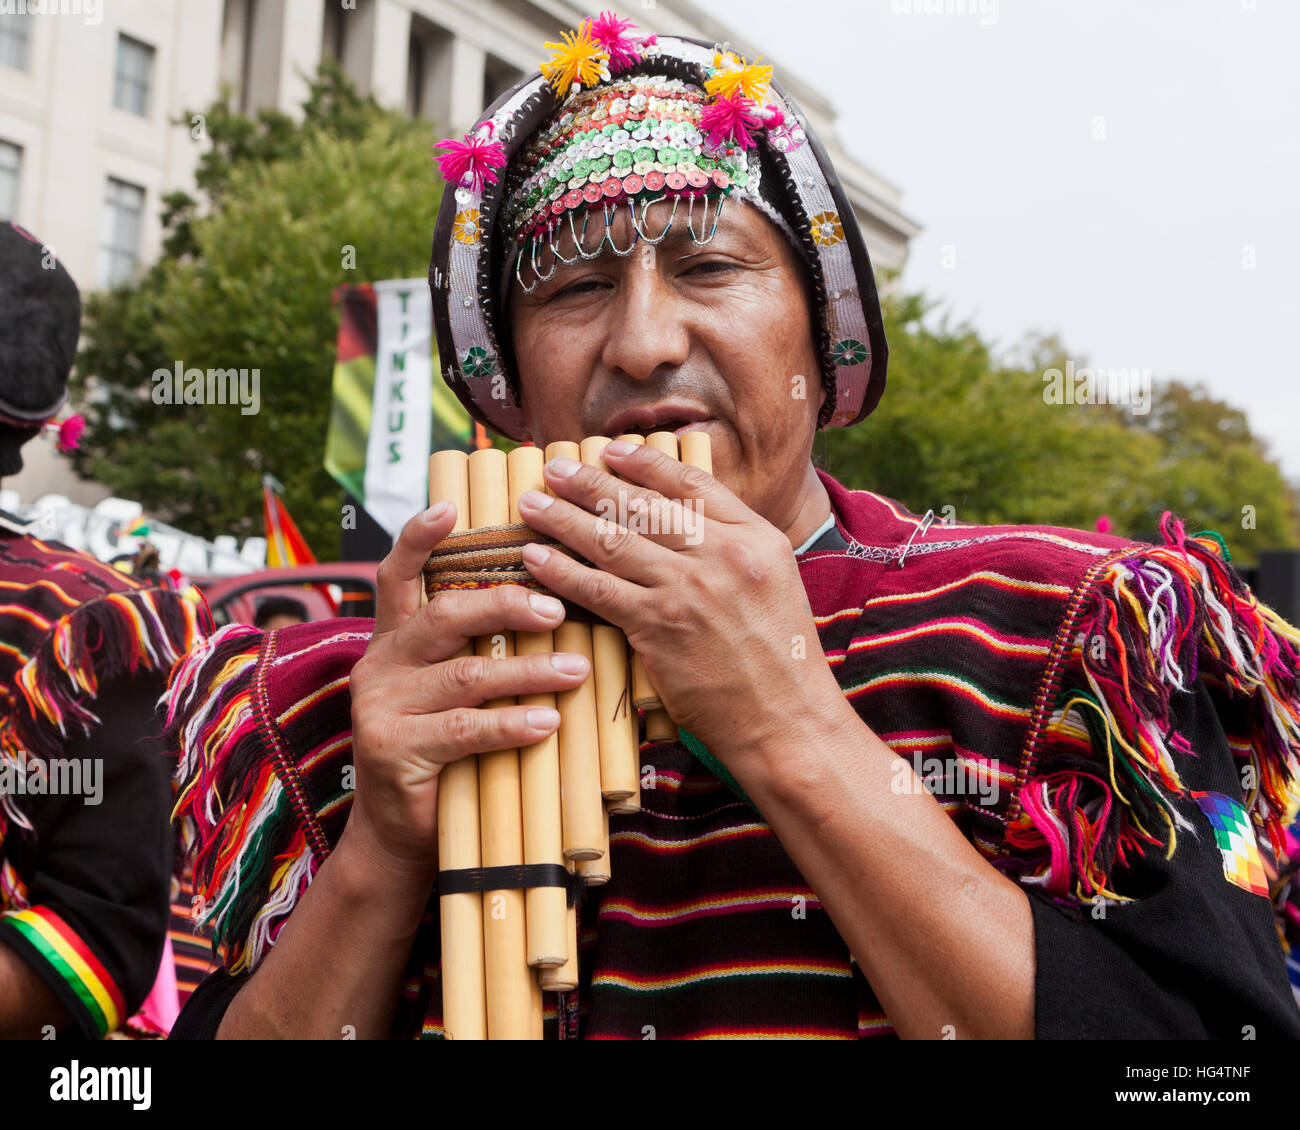 Boliviano flauto di pan giocatore al festival Latino - Washington DC, Stati Uniti d'America Foto Stock